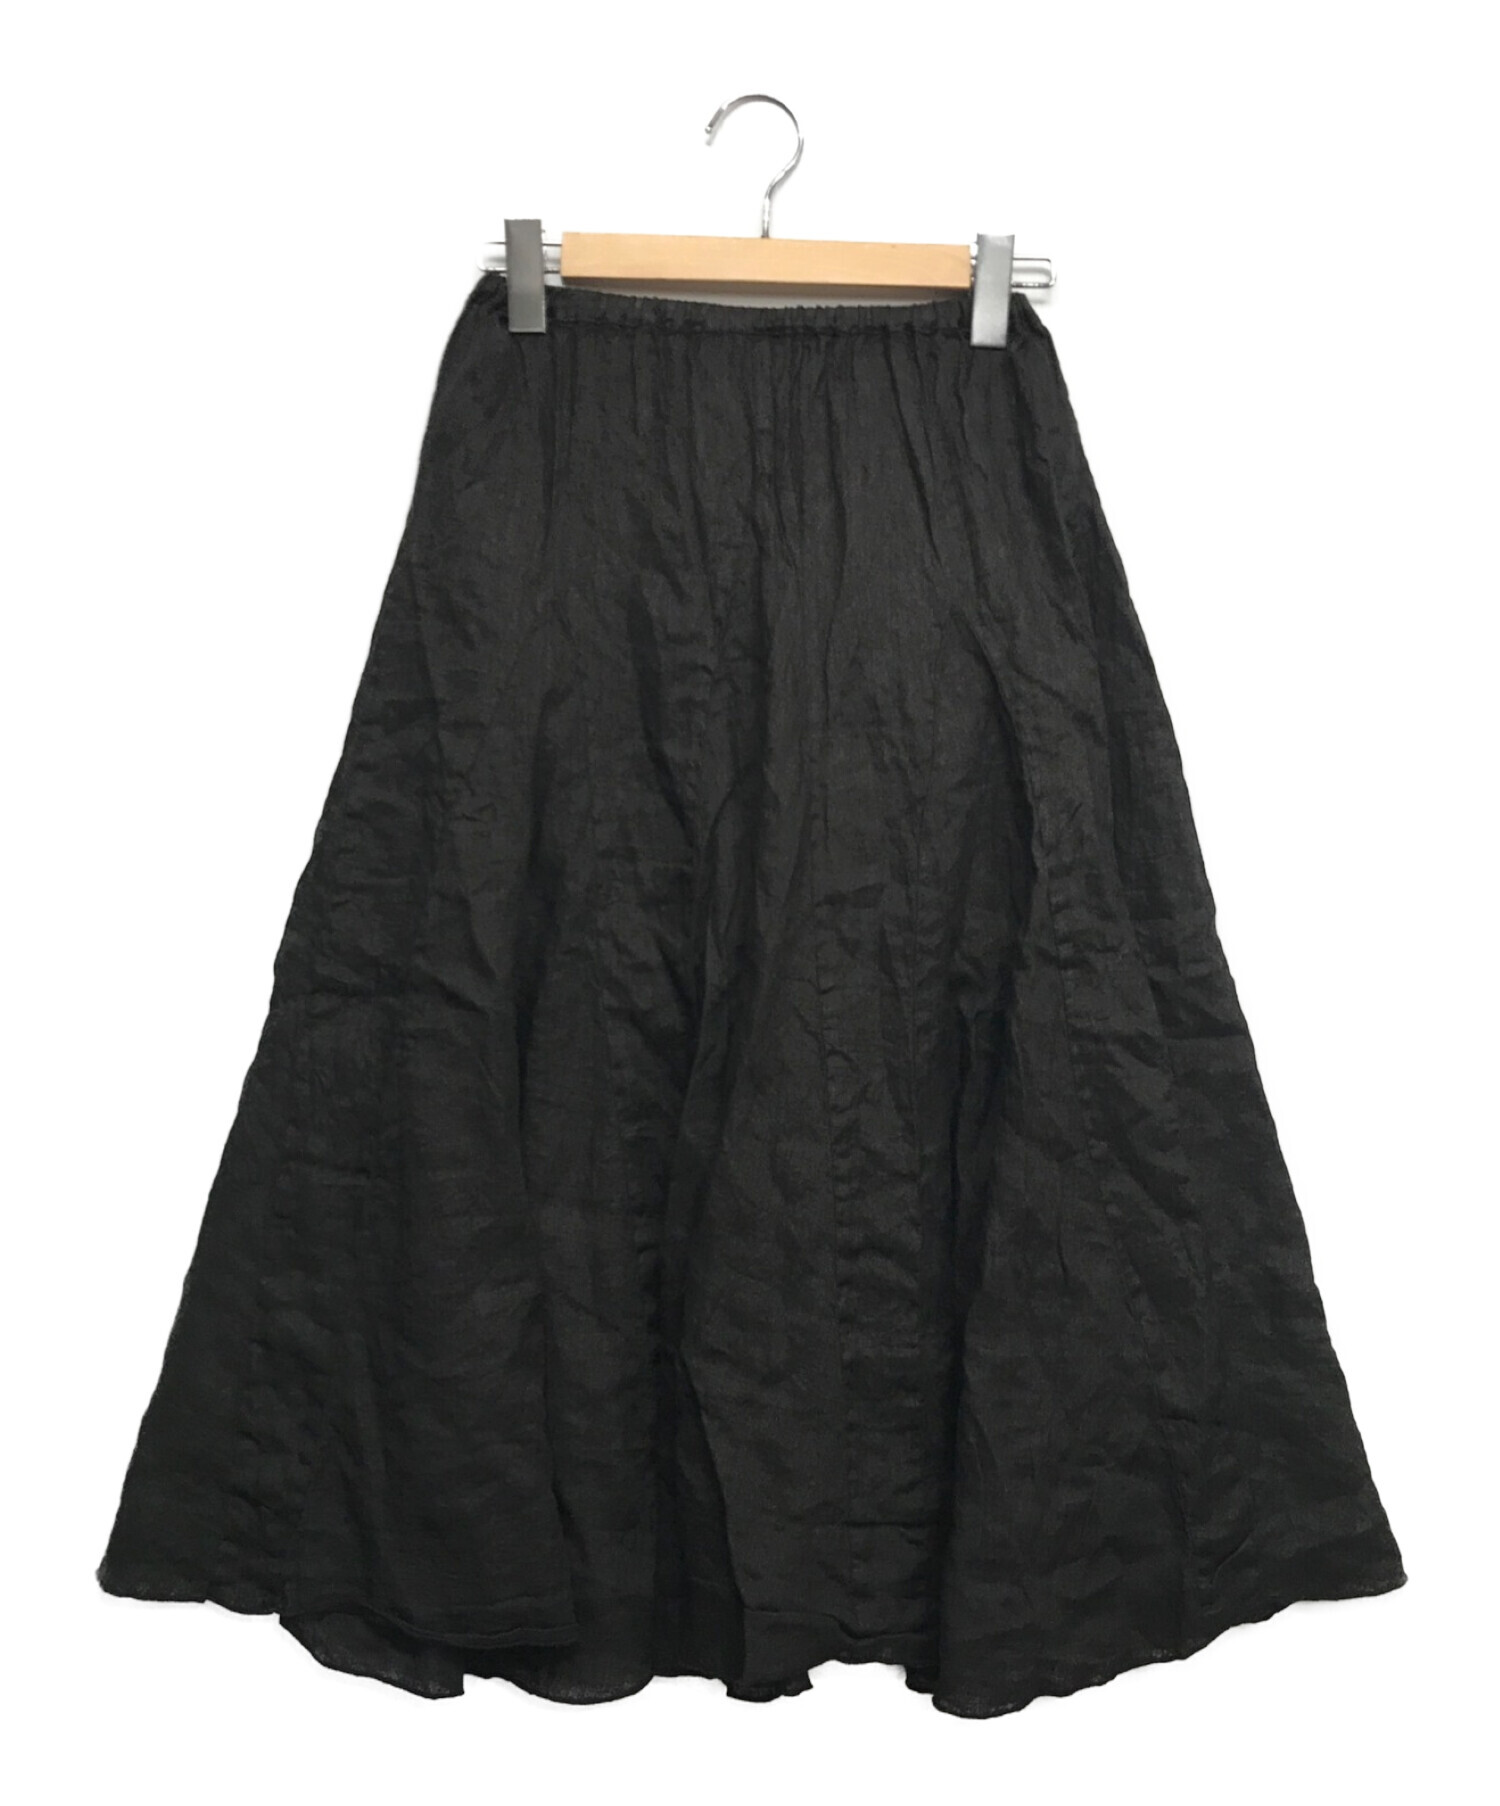 Ron Herman CP SHADE 麻ロングスカート XS とっておきし新春福袋 - スカート